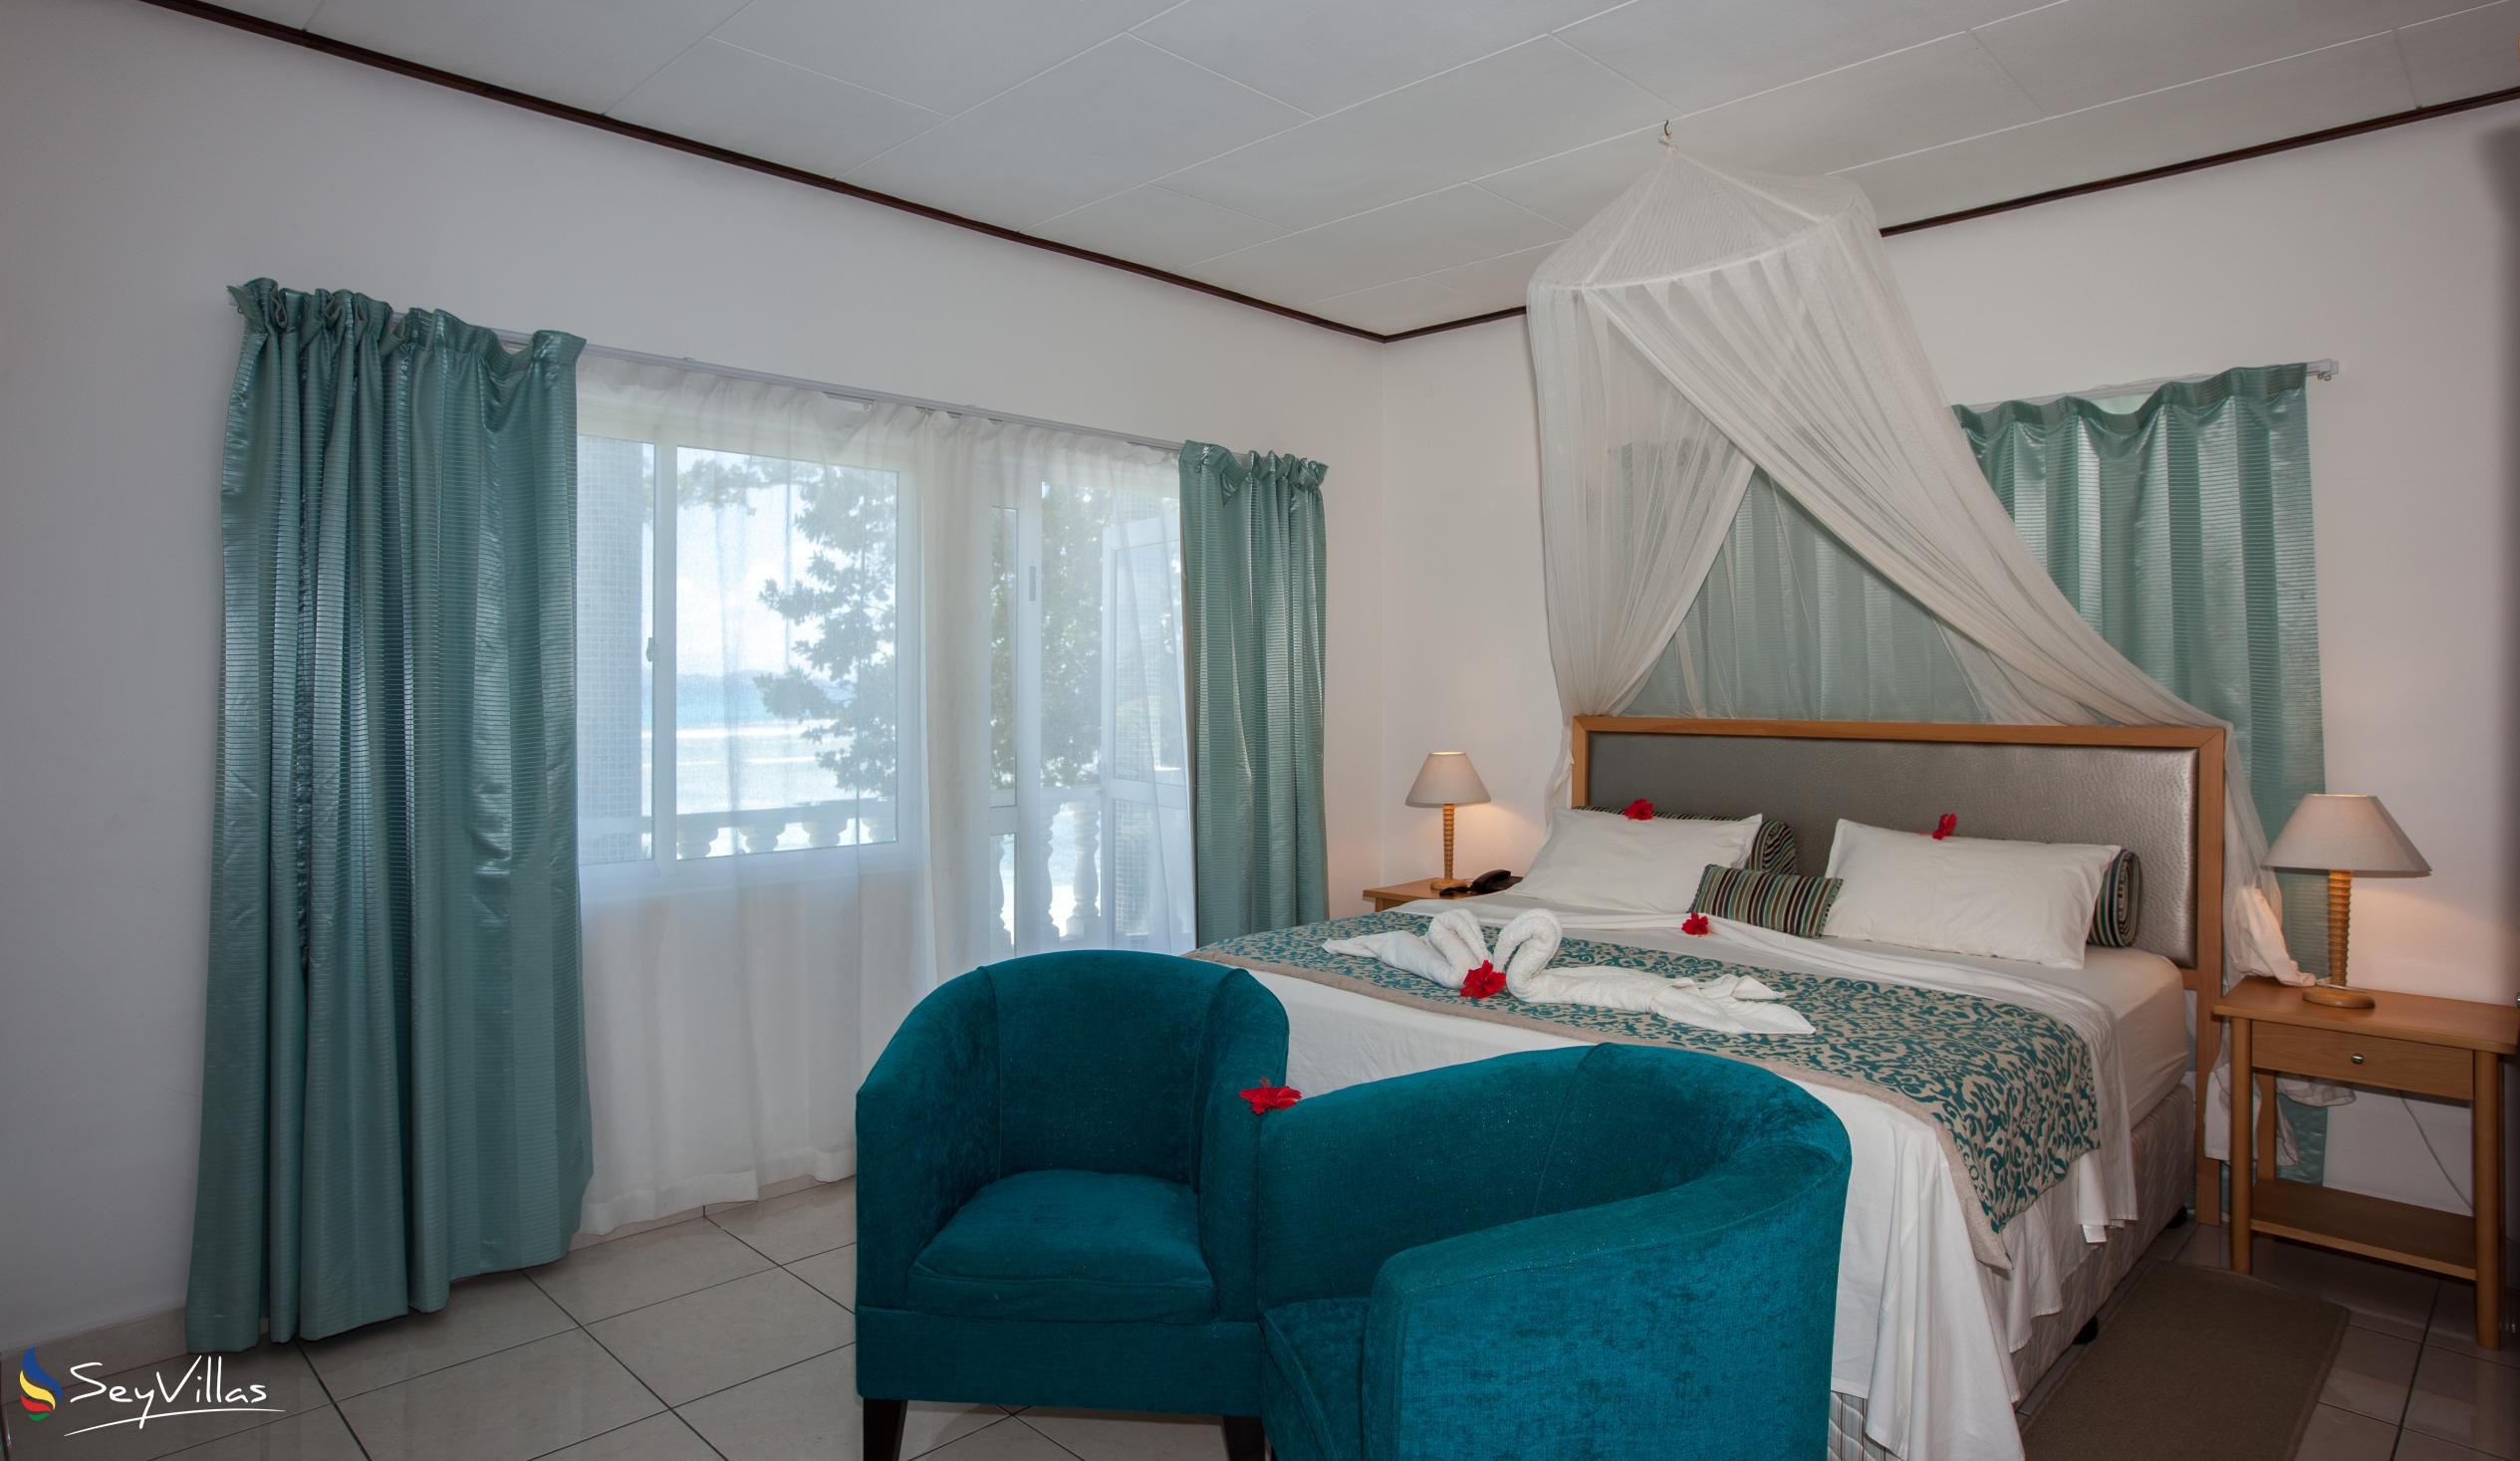 Foto 43: Moonlight Beach Villa - Chambre standard vue sur la Mer - La Digue (Seychelles)